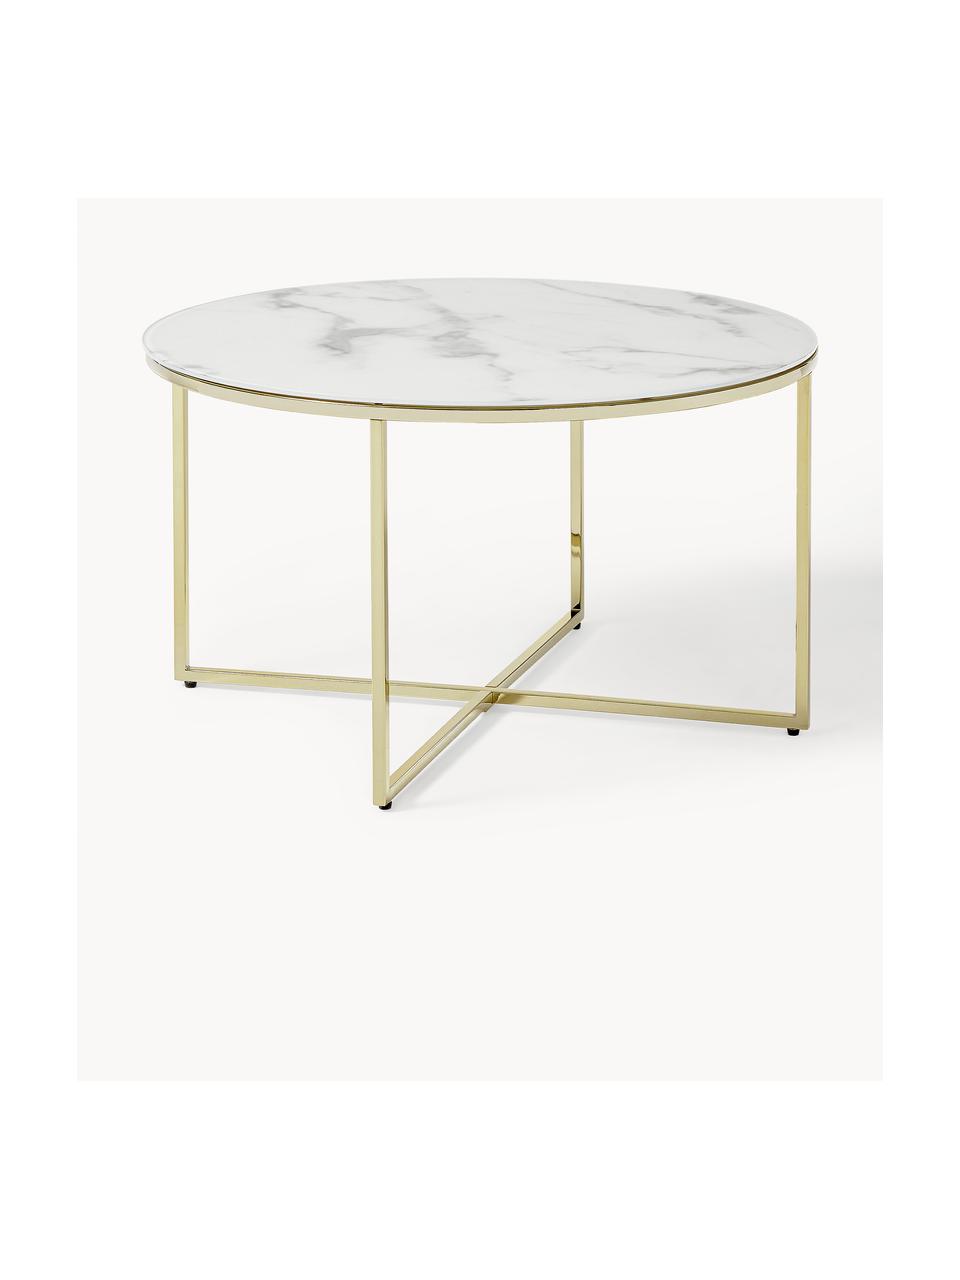 Tavolino rotondo da salotto con piano in vetro effetto marmo Antigua, Struttura: metallo ottonato, Bianco effetto marmo. dorato lucido, Ø 80 cm